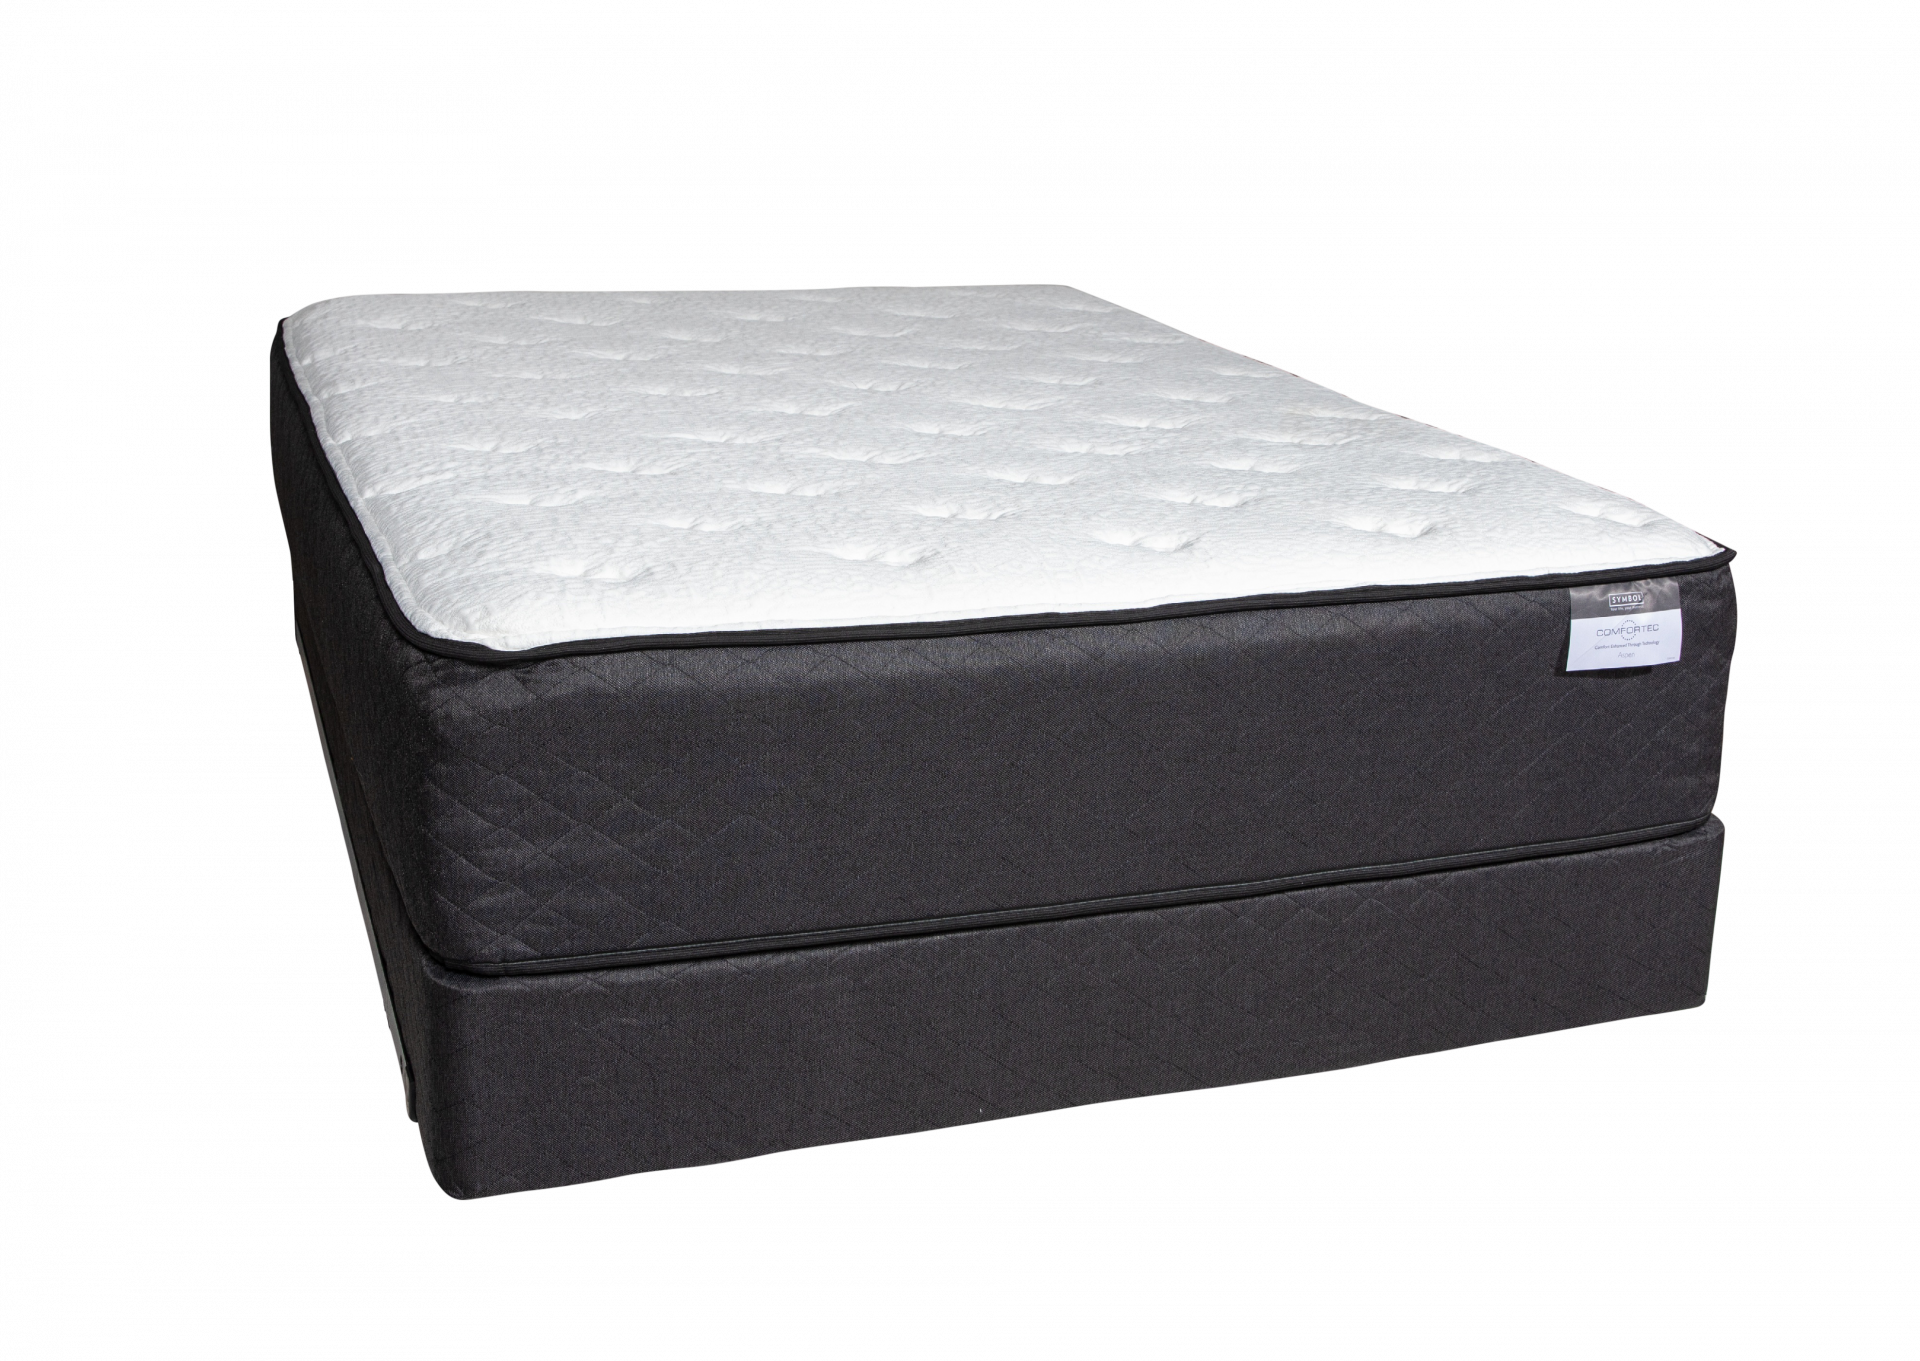 Aspen Luxury Firm Queen size mattress set by Symbol Mattress                                                                   ,Symbol Mattress